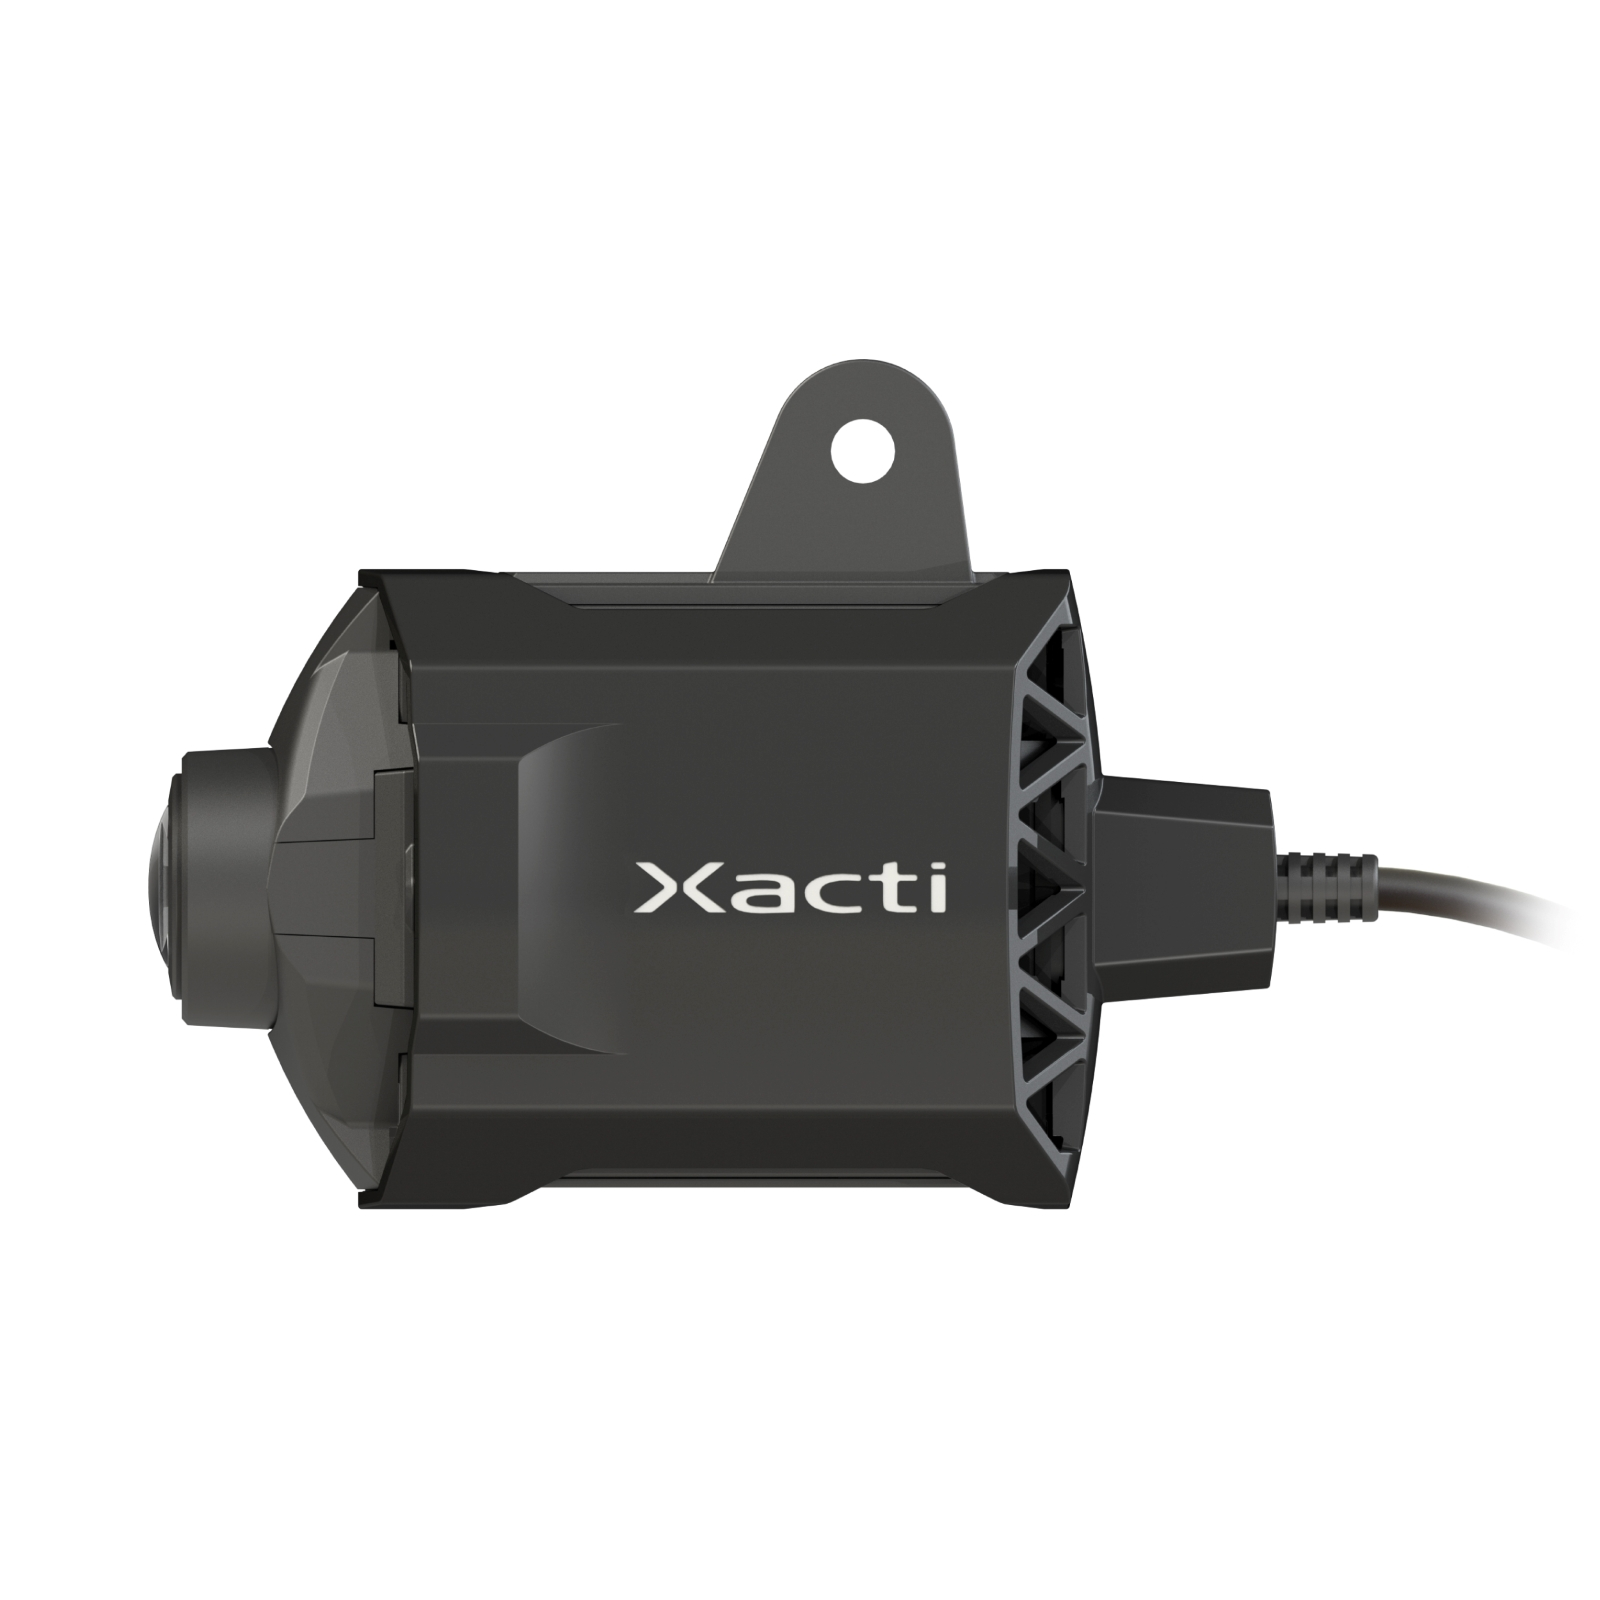 ザクティ Xacti 業務用ウェアラブルカメラ 頭部装着タイプ CX-WE100 (ワンタッチ接続12ヶ月分付属パッケージ) (送料無料)